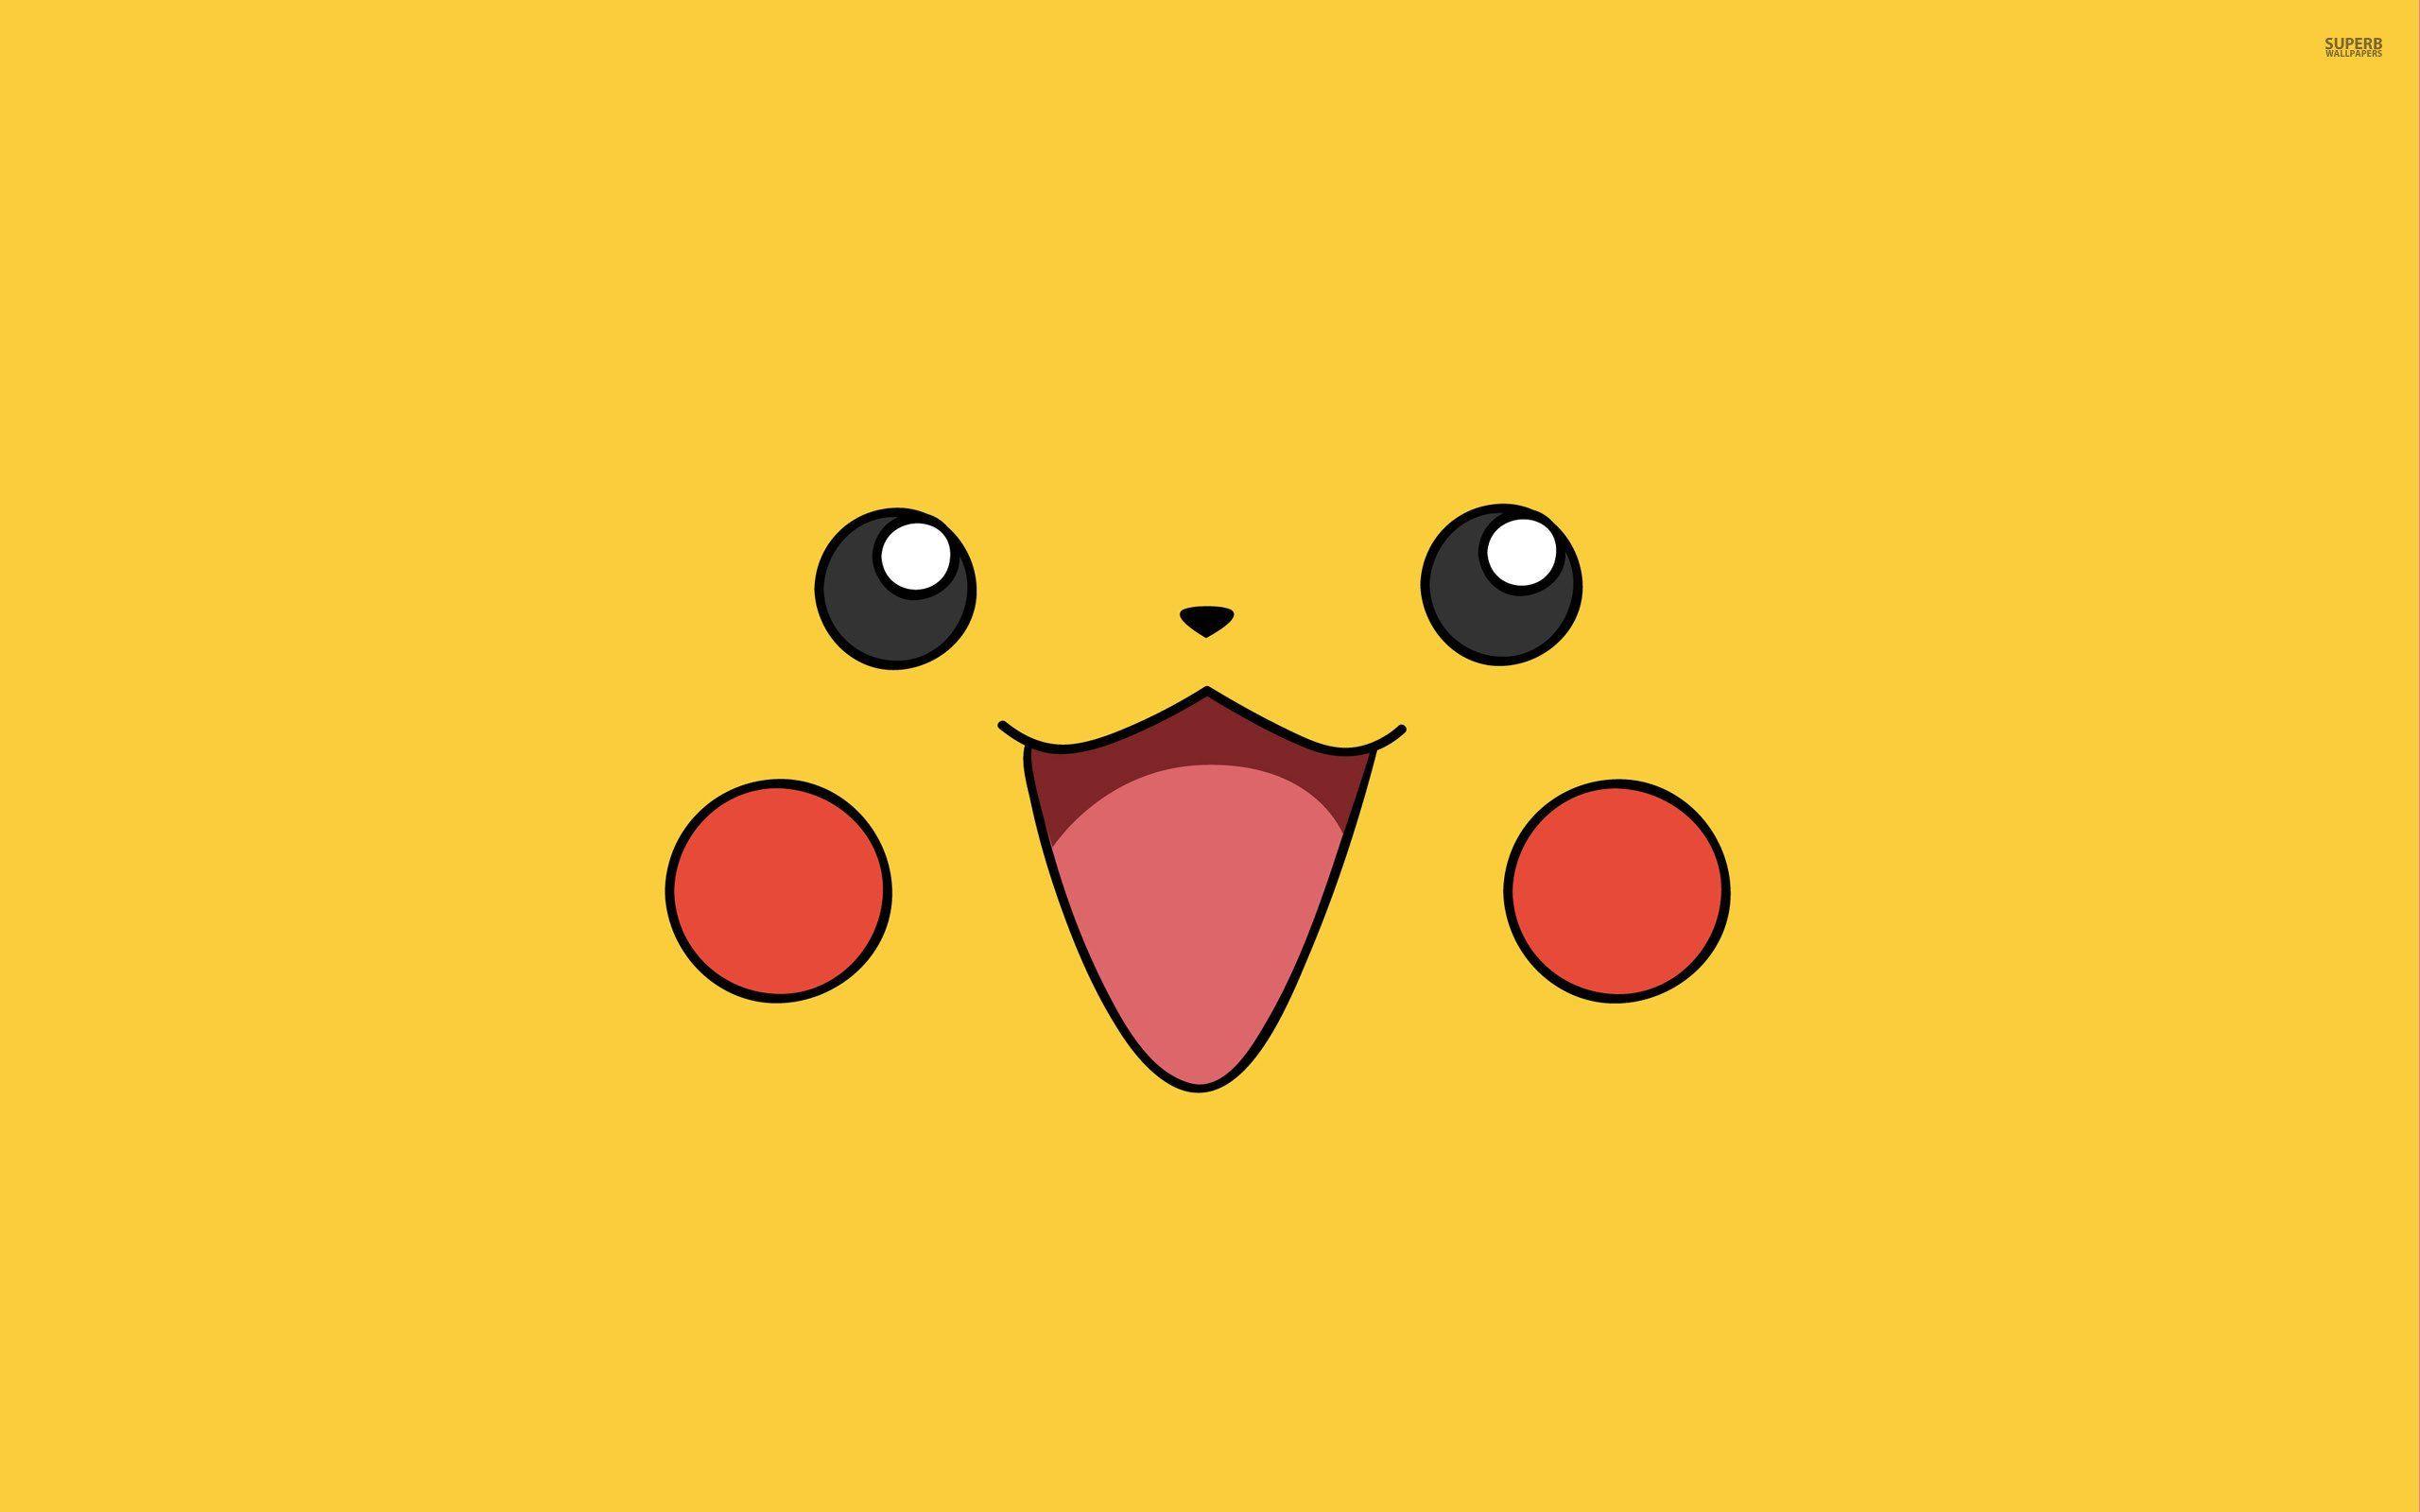 Pokemon Pikachu Wallpaper